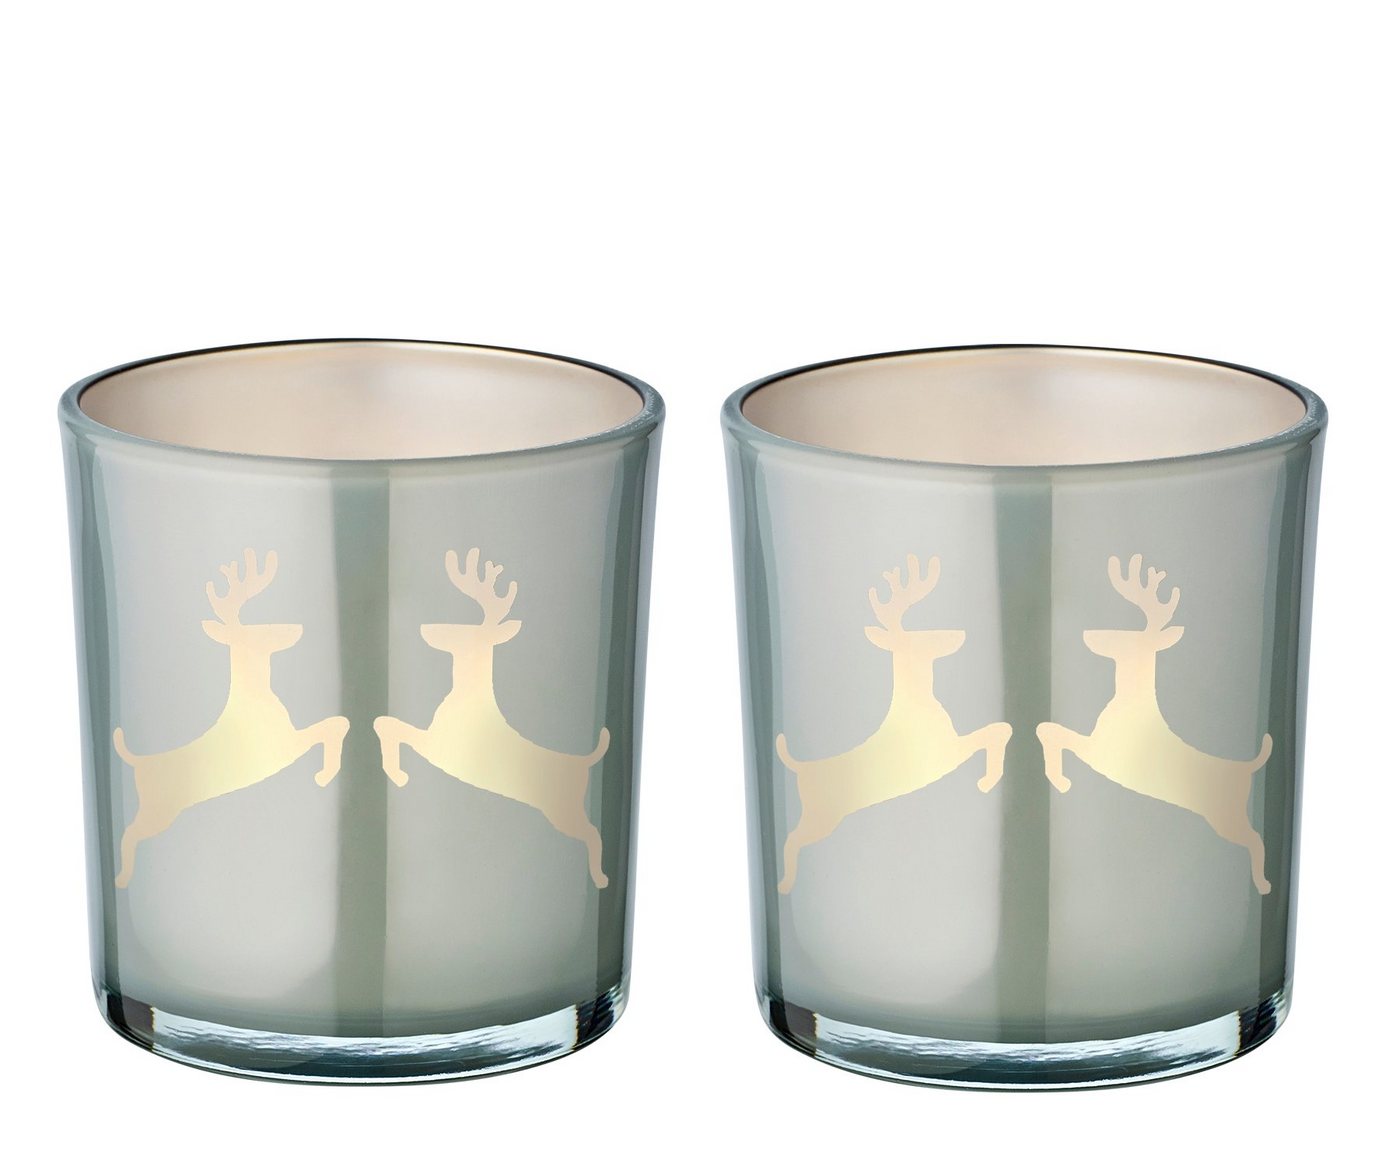 EDZARD Windlicht Loki (Set, 2er), Höhe 8 cm, Ø 7,5 cm, Windlicht, Kerzenglas mit Rentier-Motiv in Grau, Teelichtglas für Teelichter von EDZARD